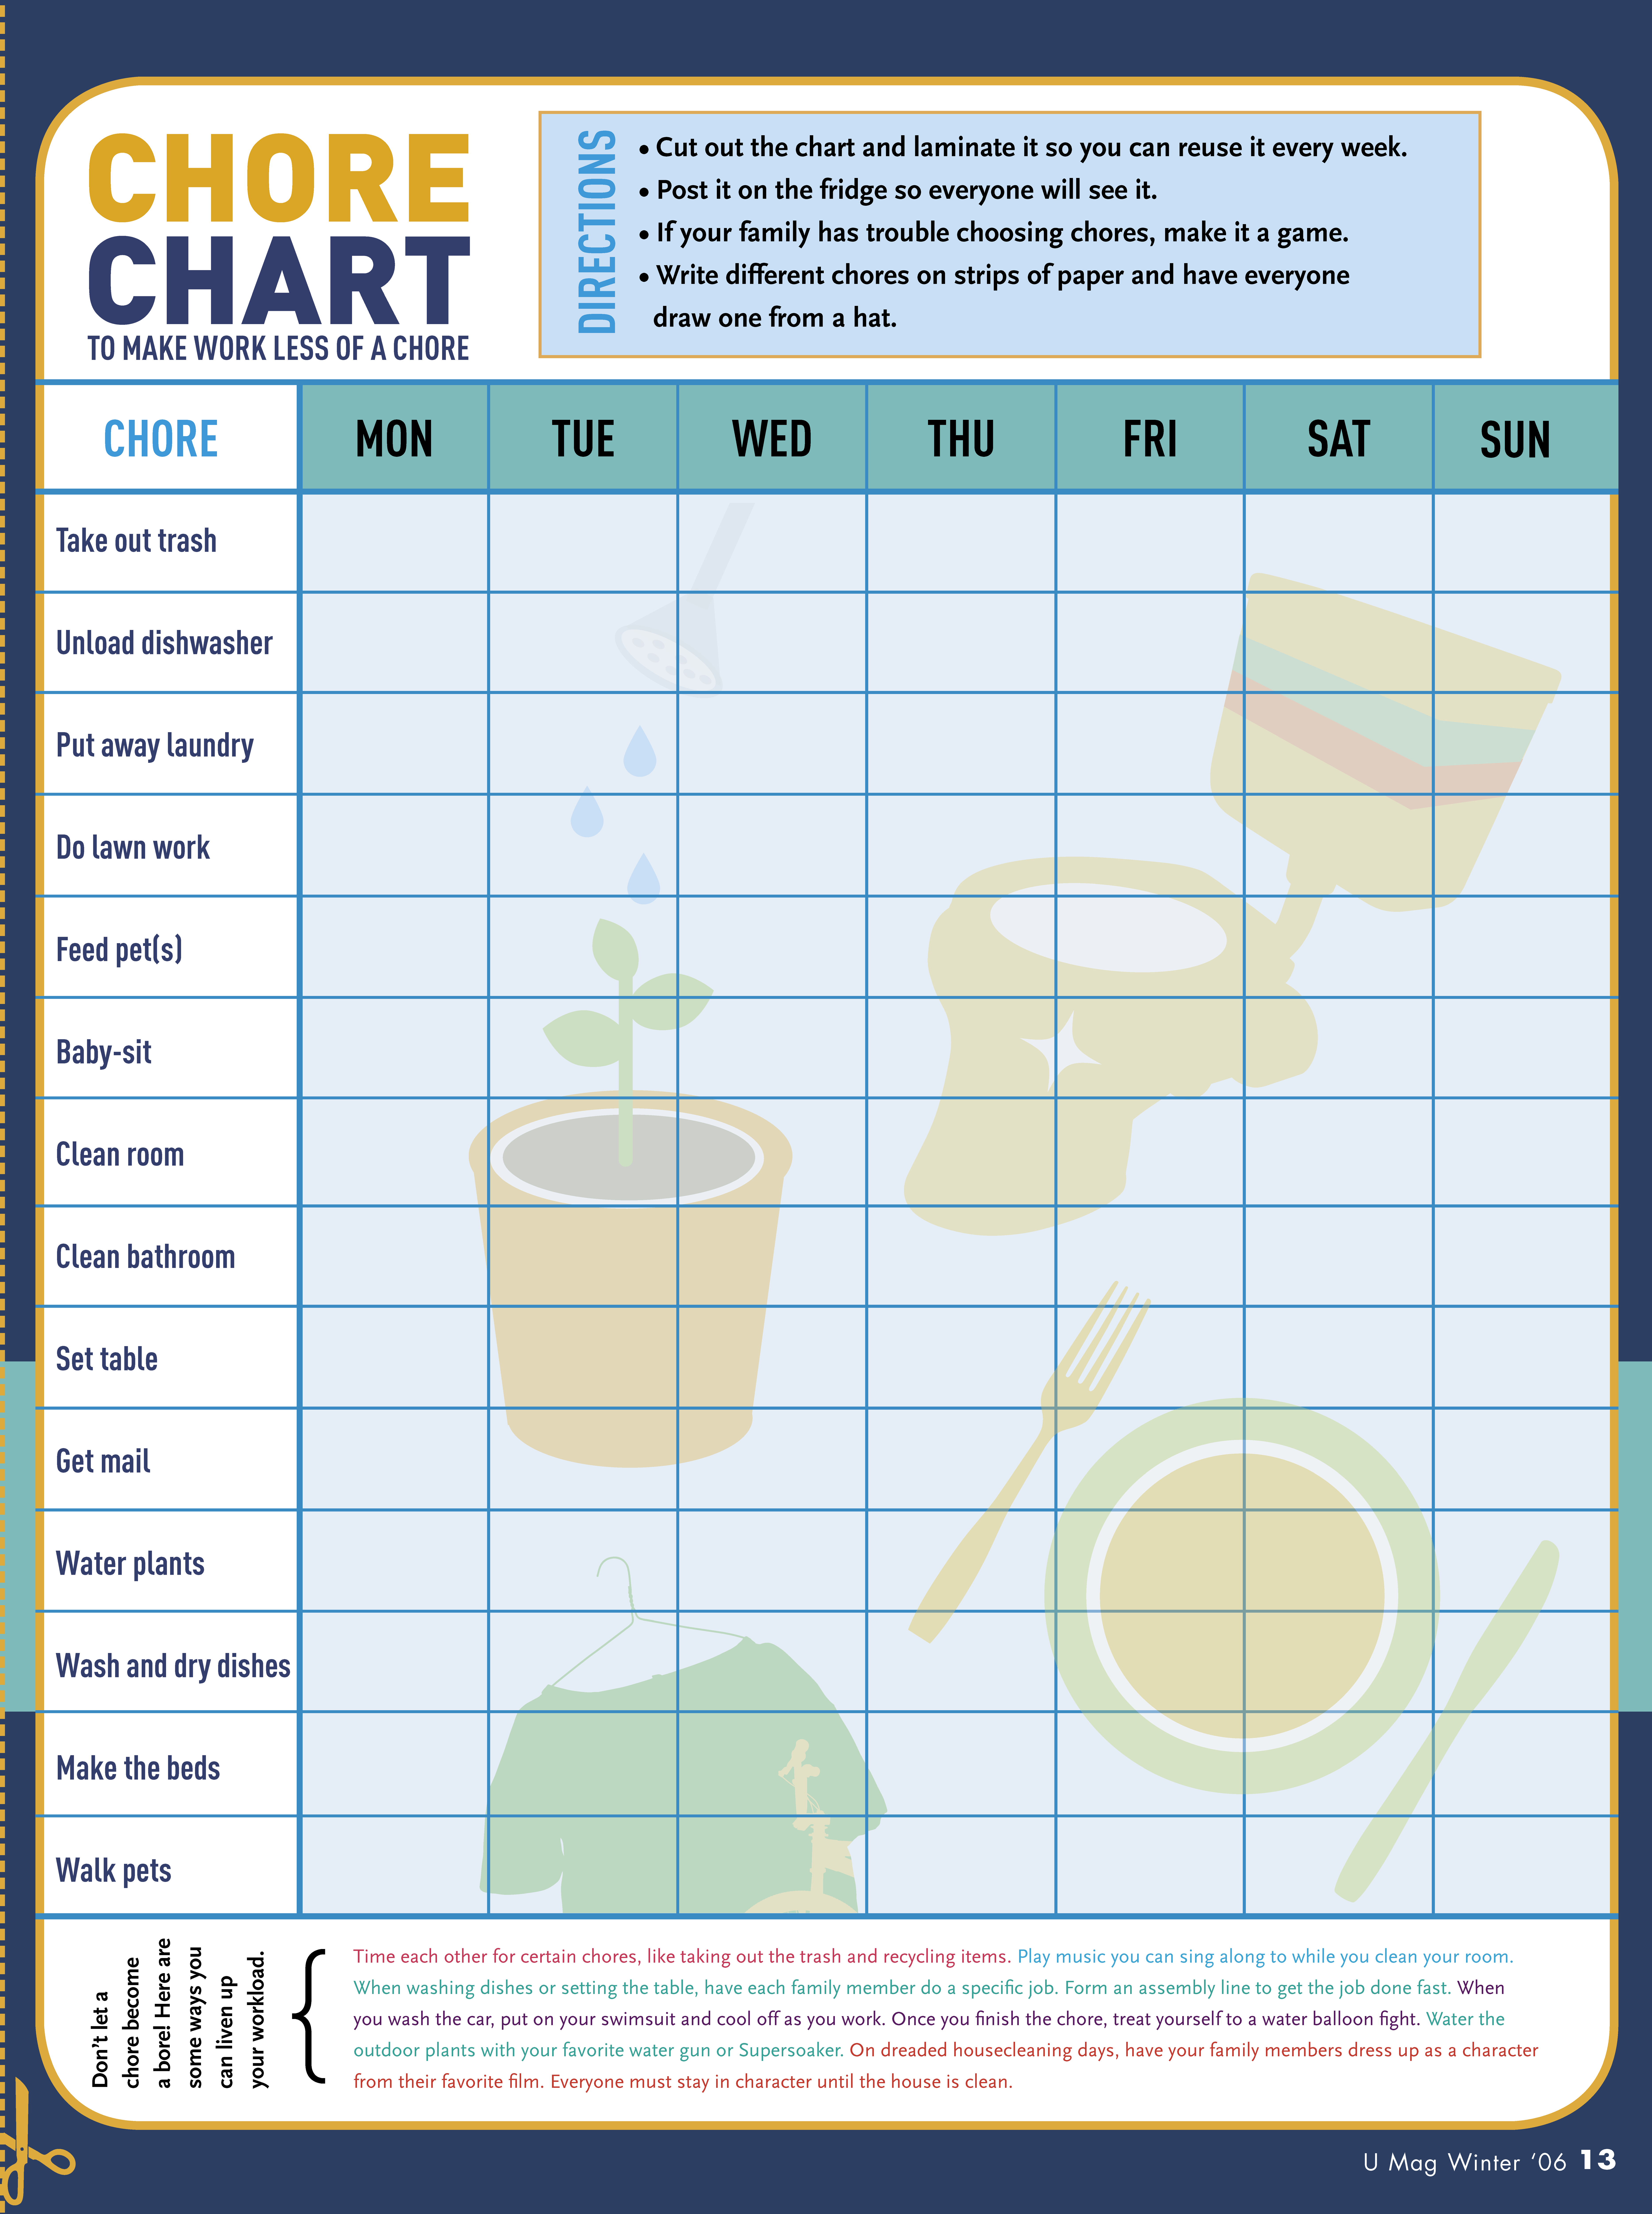 printable character chore chart plantilla imagen principal